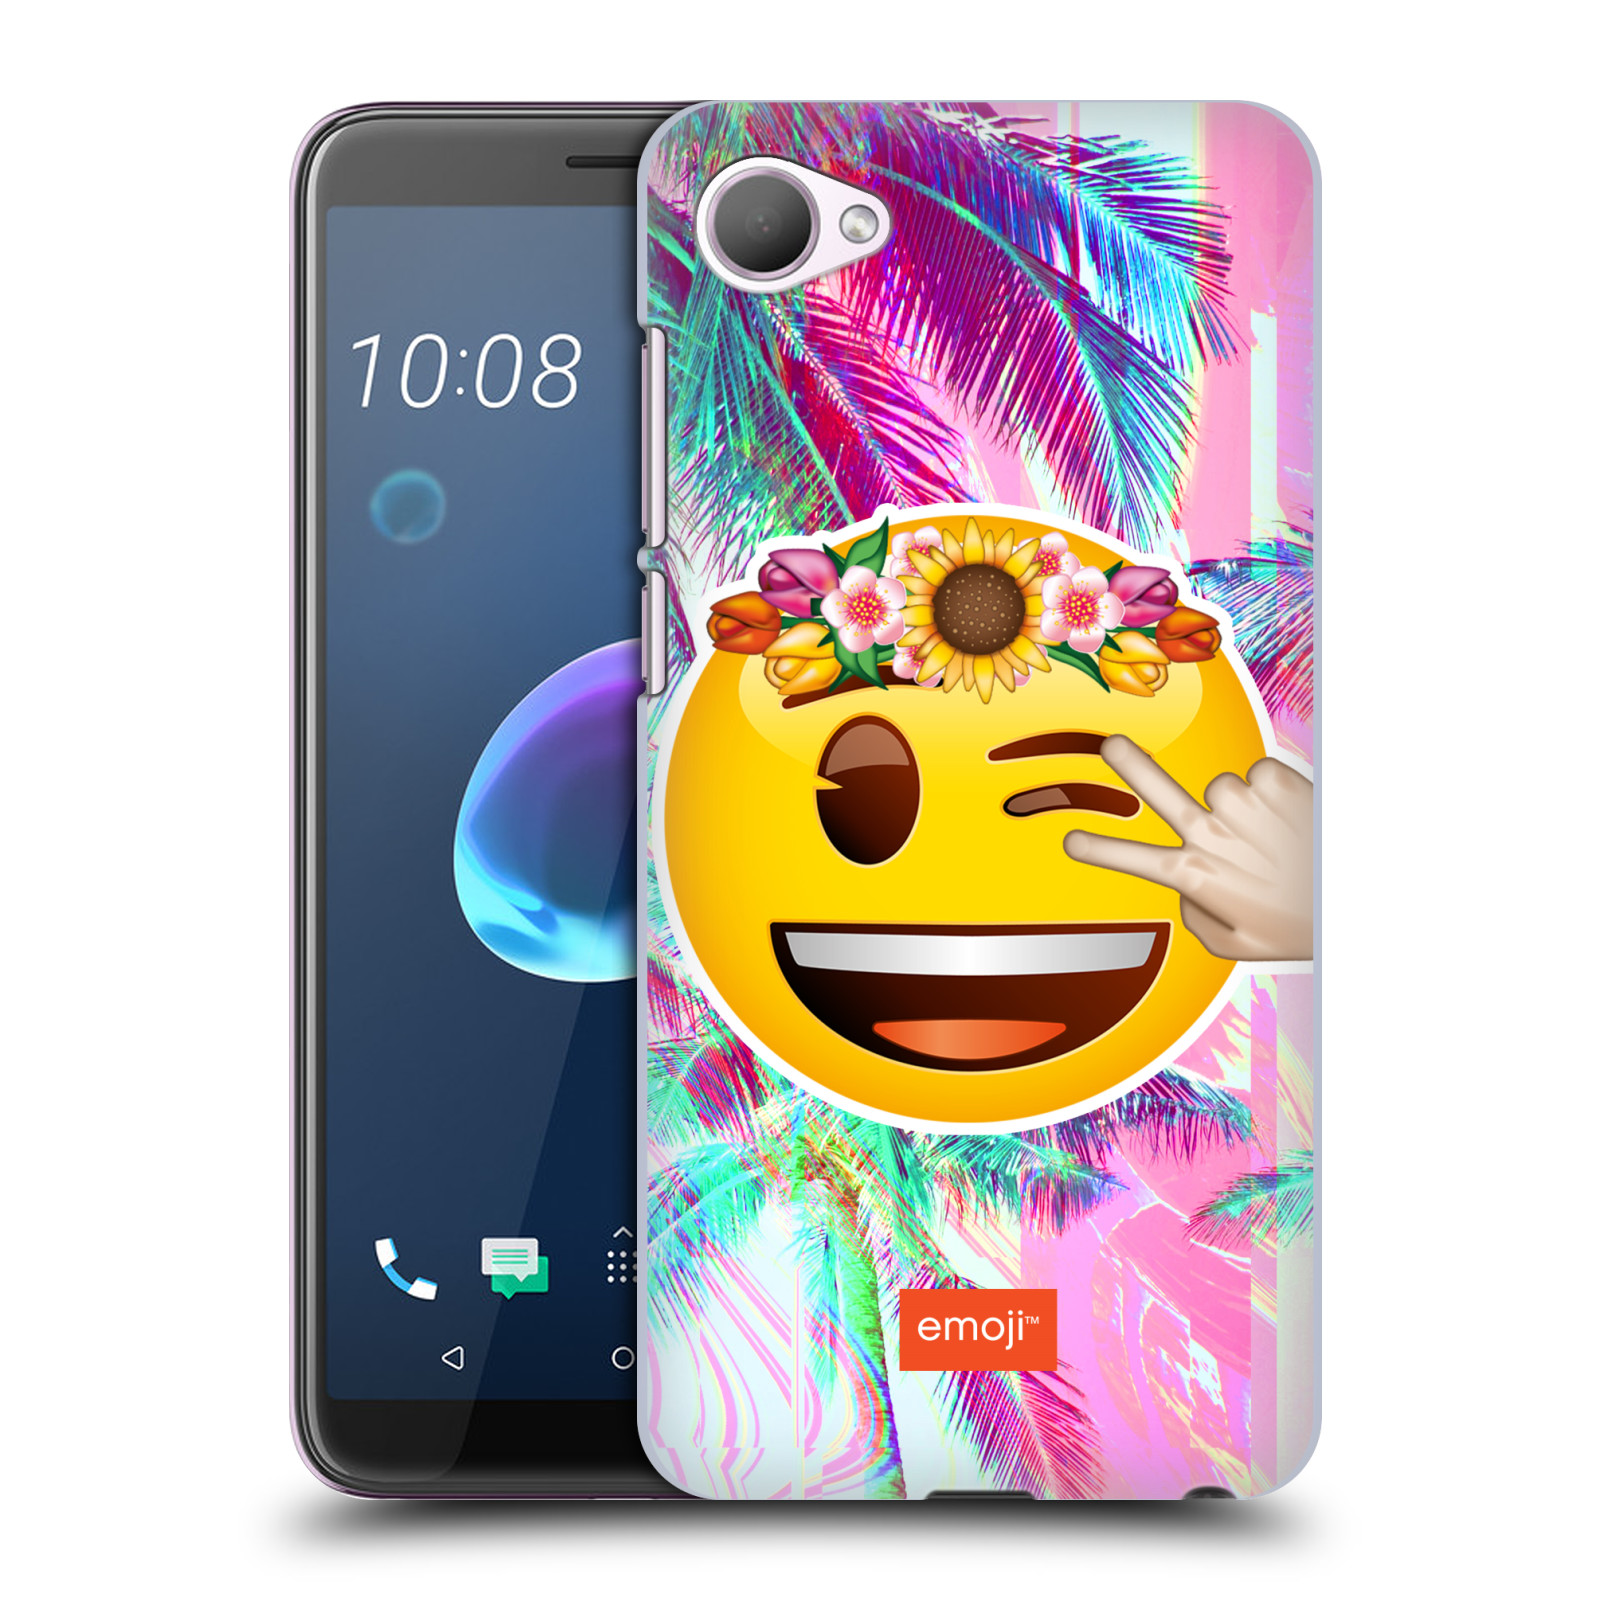 Pouzdro na mobil HTC Desire 12 / Desire 12 DUAL SIM - HEAD CASE - Emoji smajlík palmy a květiny